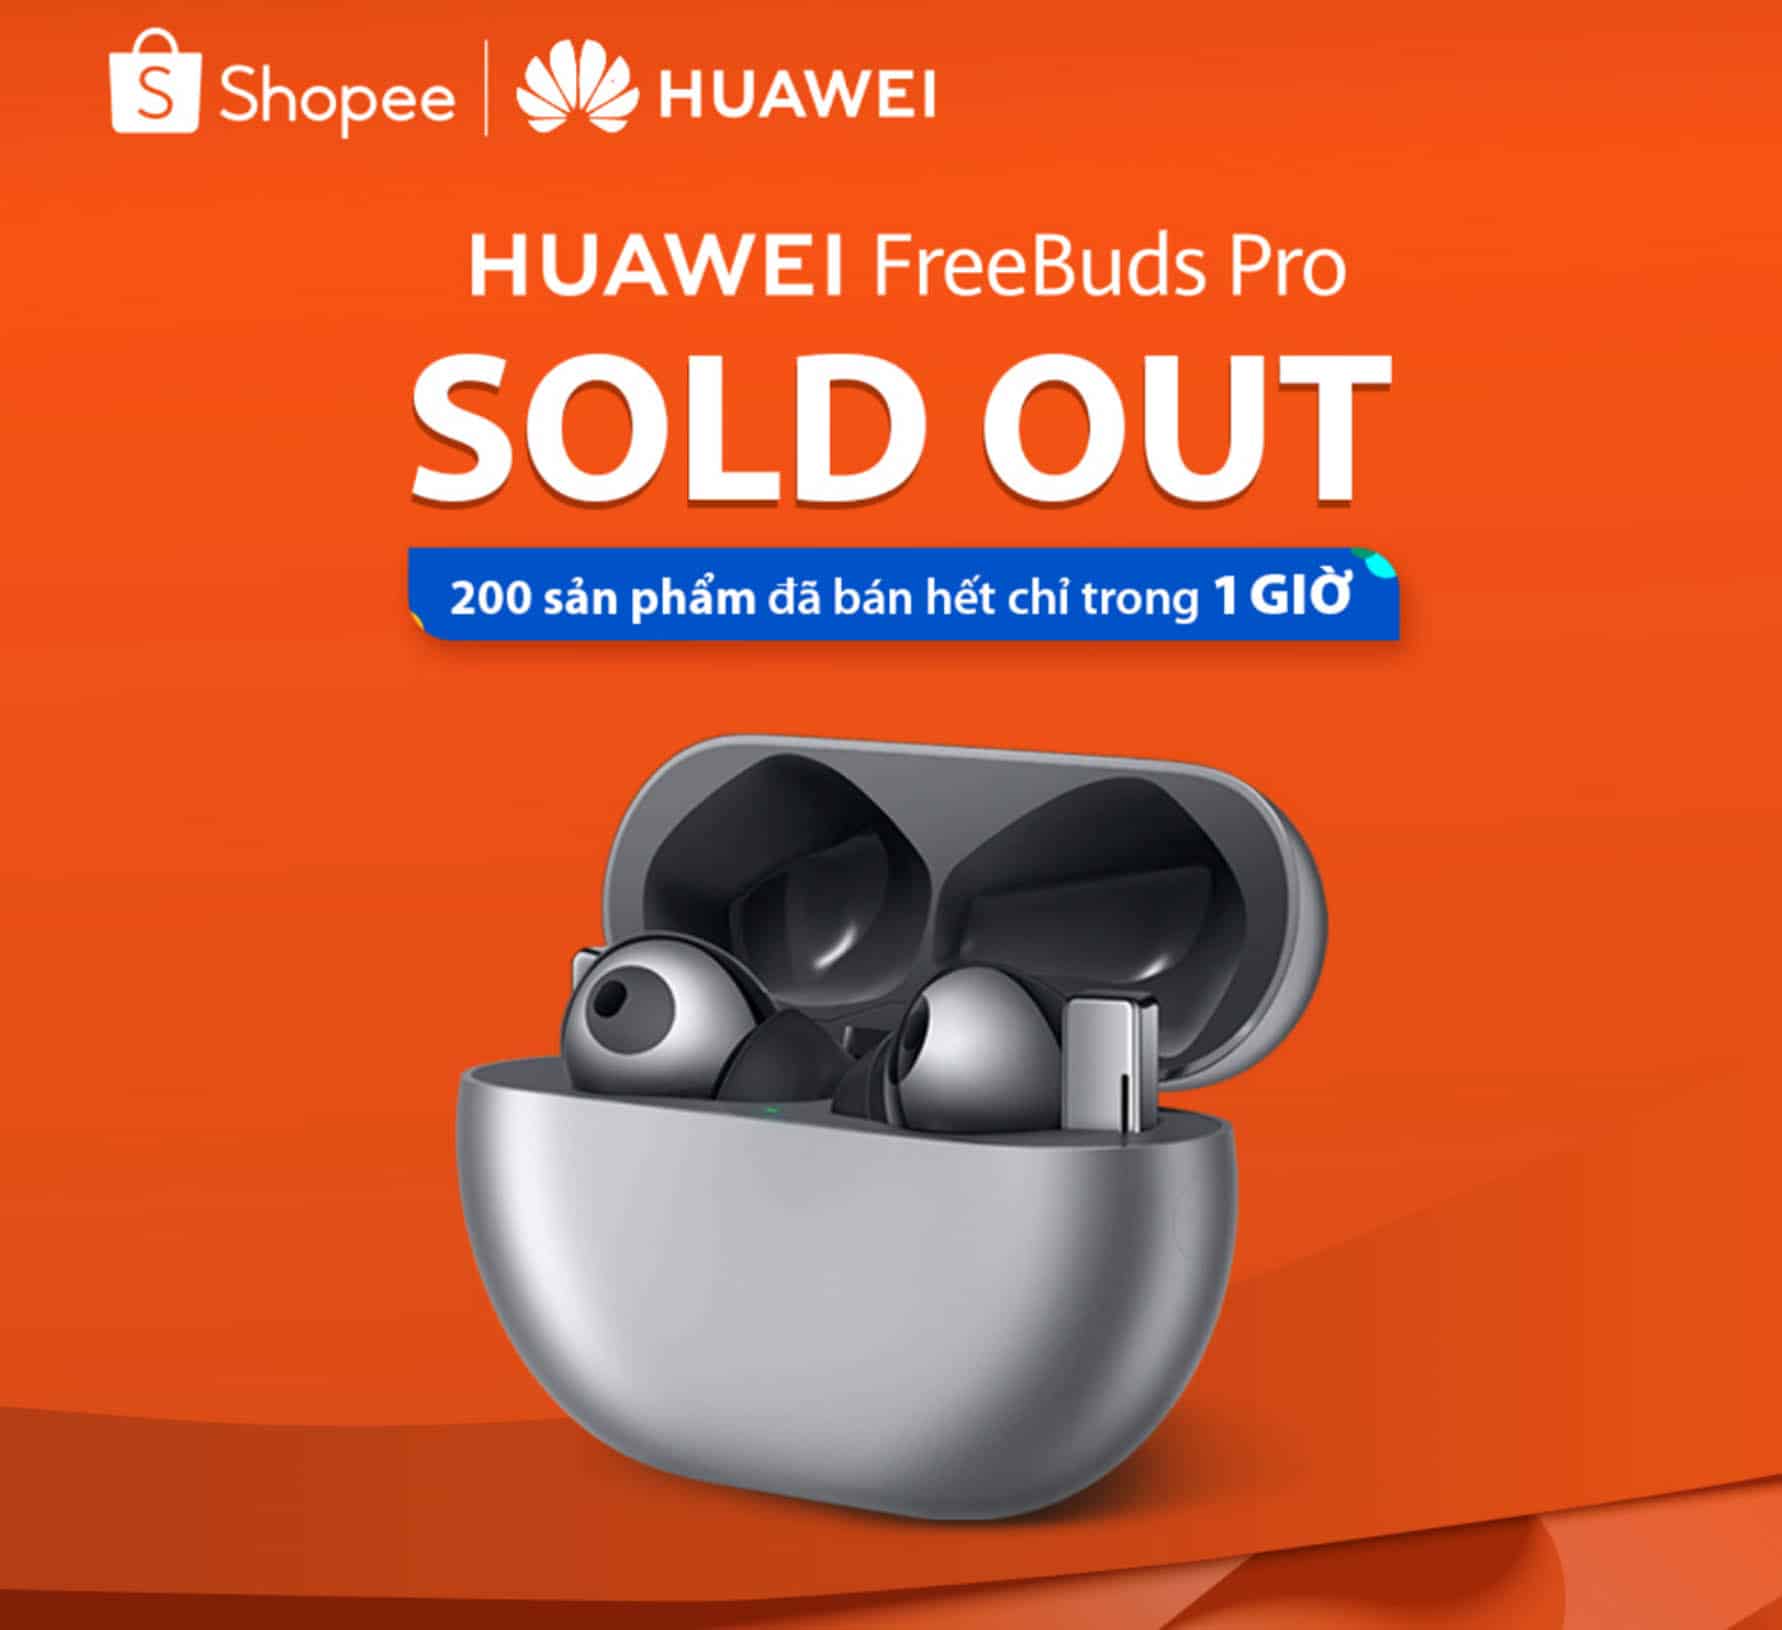 Huawei FreeBuds Pro chính thức mở bán ngày 11.11 sau khi cháy hàng 200 suất đầu tiên